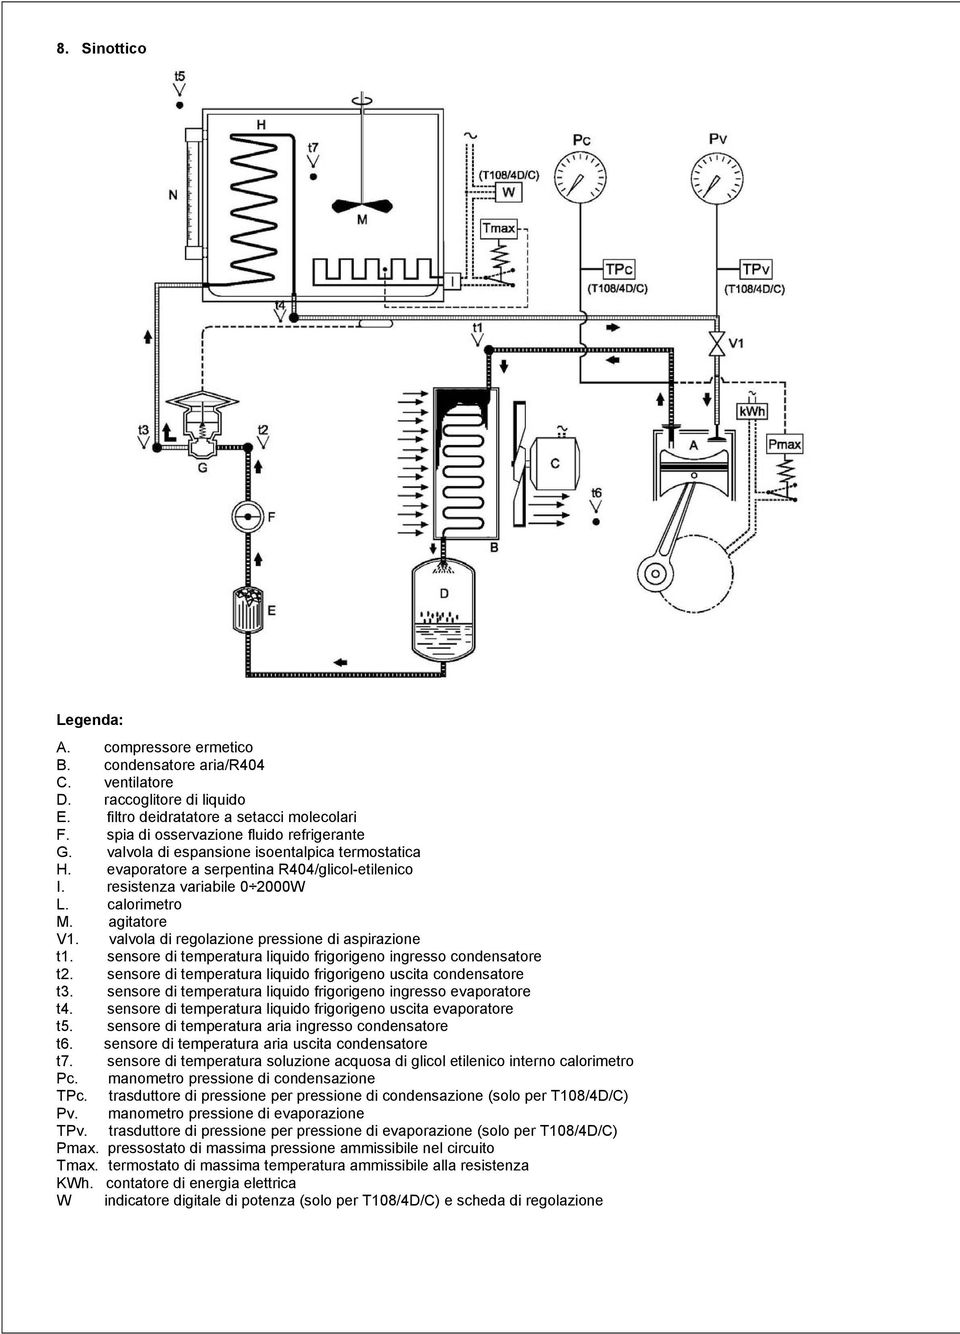 agitatore V1. valvola di regolazione pressione di aspirazione t1. sensore di temperatura liquido frigorigeno ingresso condensatore t2.